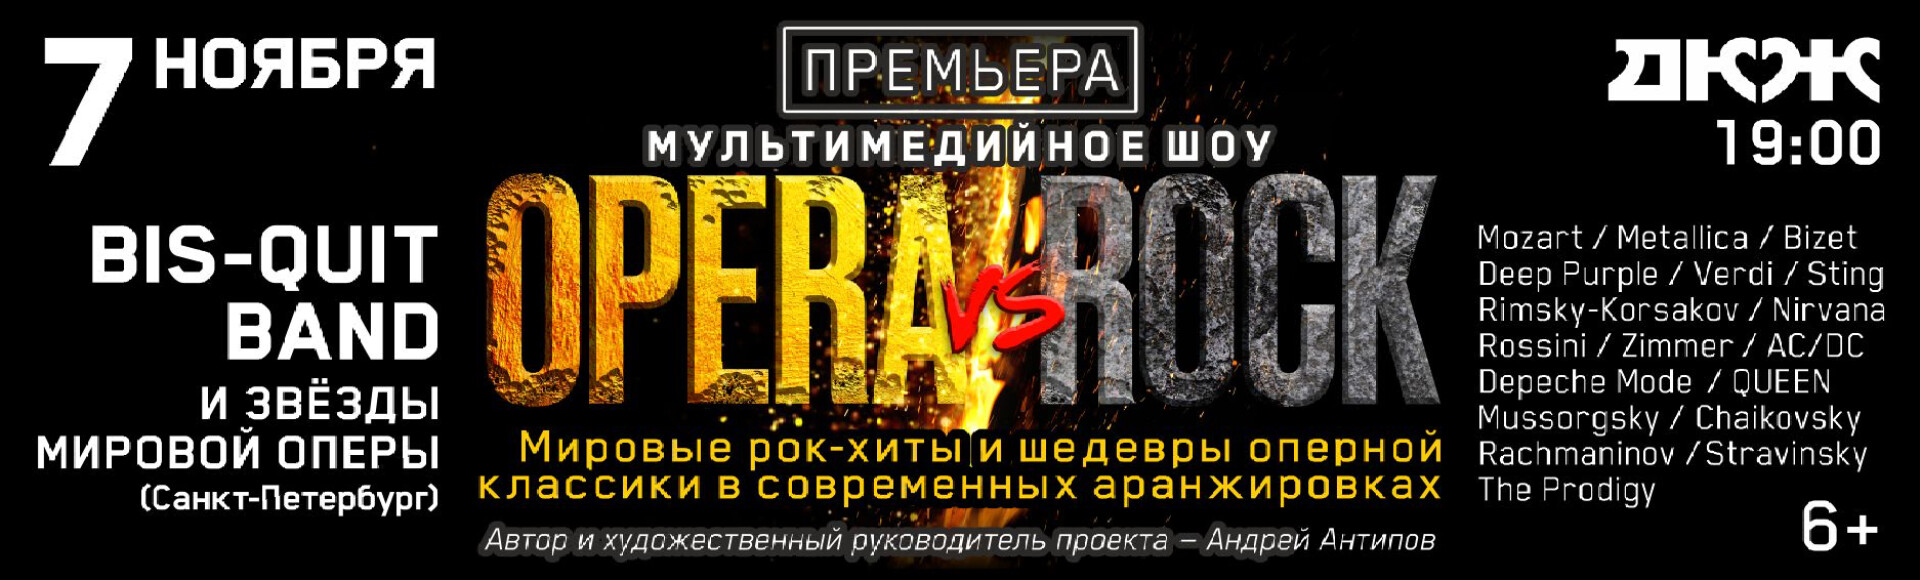 МИРОВАЯ ПРЕМЬЕРА «OPERA VS ROCK» постер